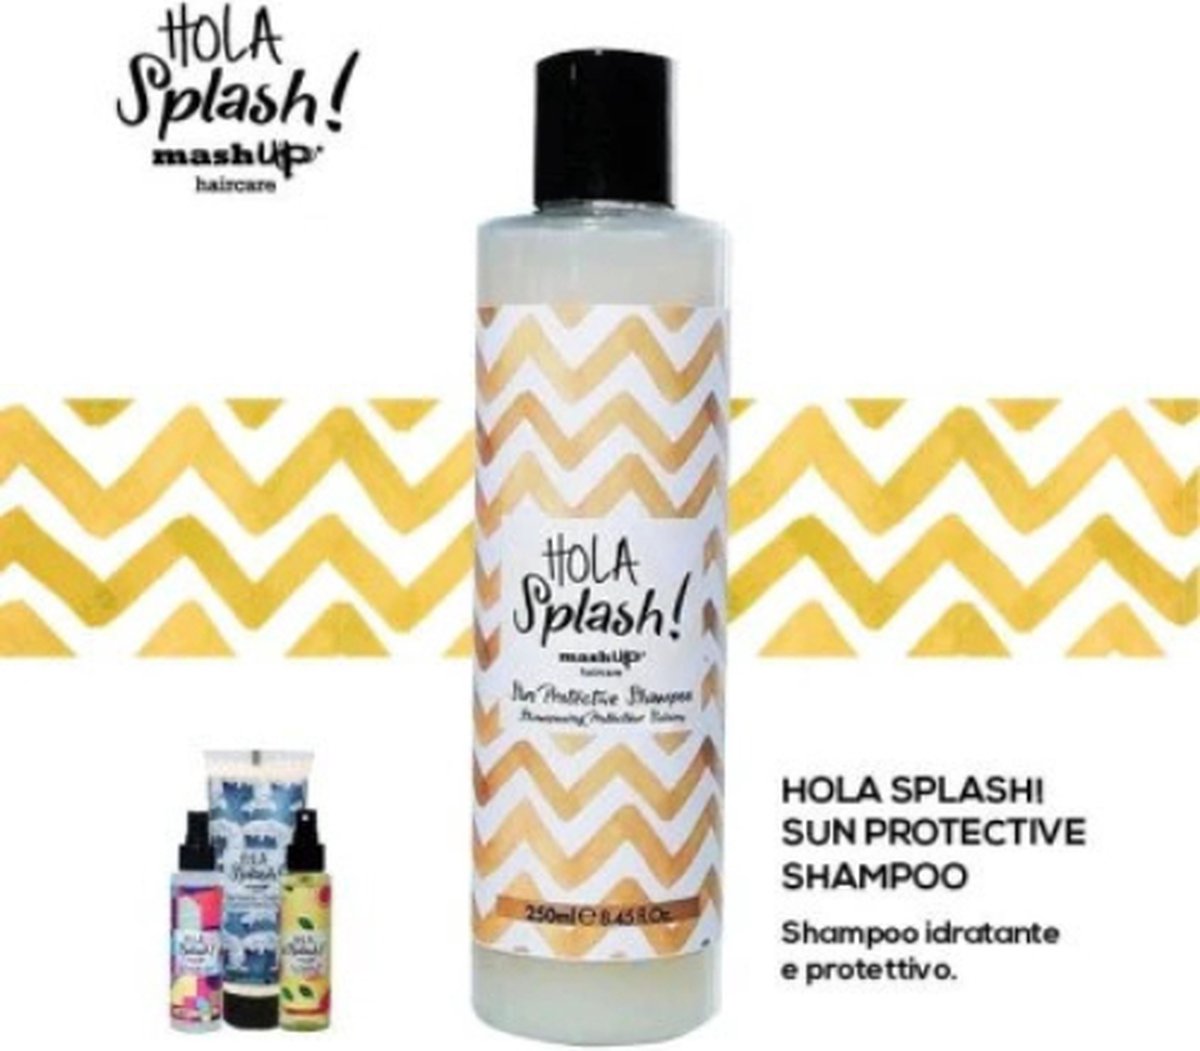 Mash up Shampoo haar sun protective 250 ml zomereditie, een cosmetica die het haar beschermt tegen de zon, sulfaat vrije shampoo